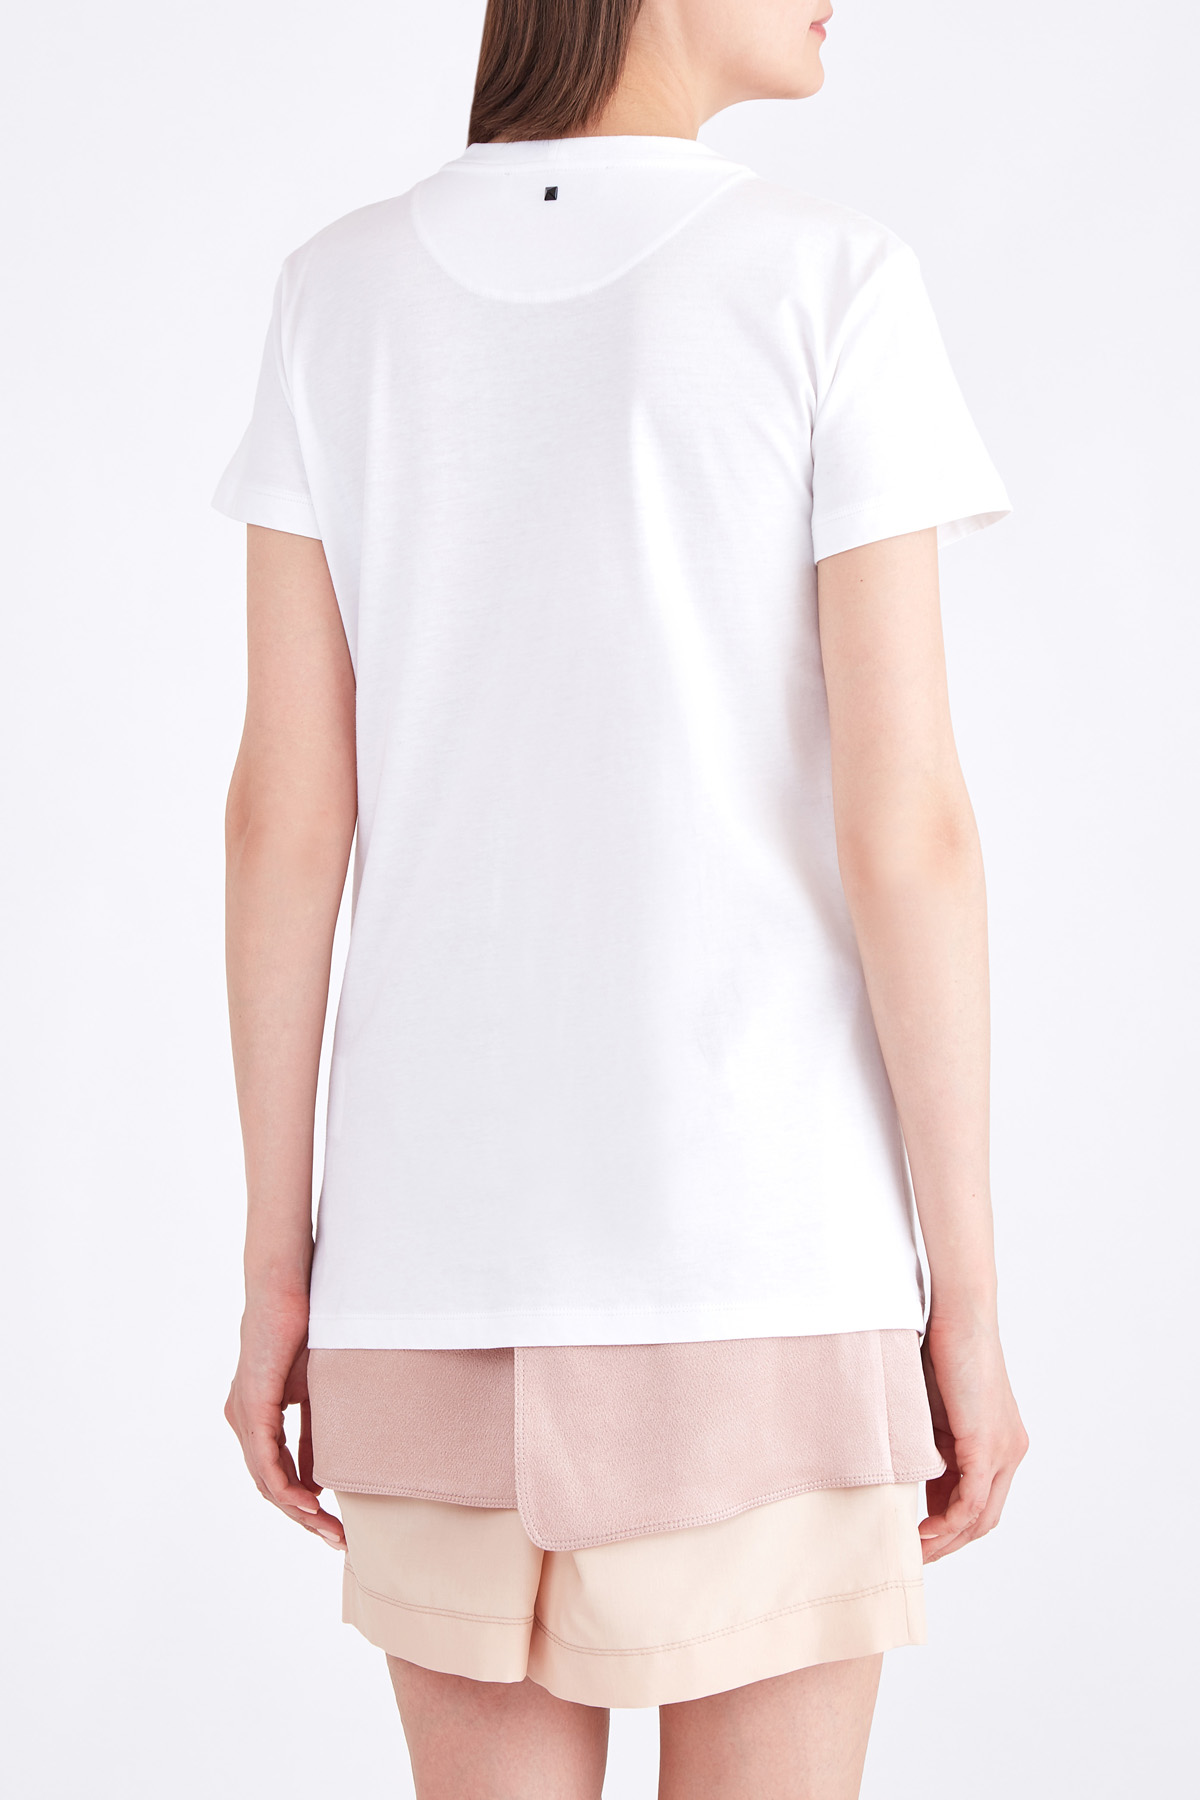 Хлопковая футболка с черно-белой аппликацией и вышивкой пайетками VALENTINO, цвет белый, размер 42;44 - фото 4